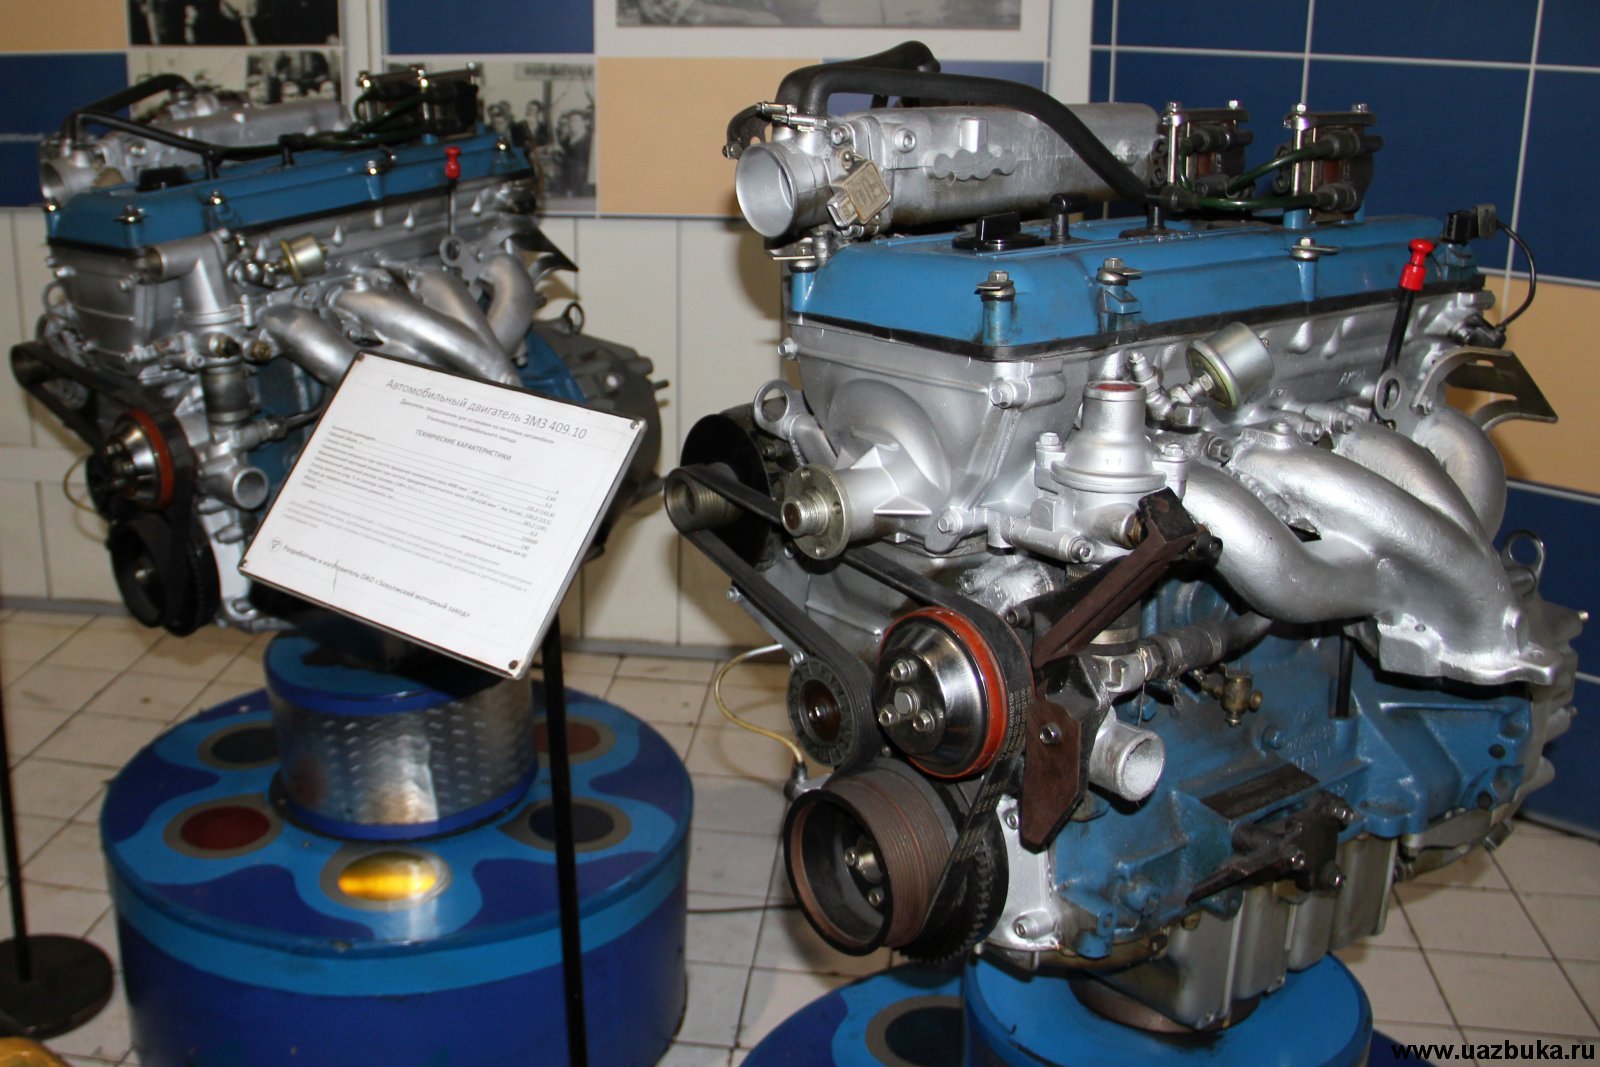 Объем двигателя 409 уаз патриот. УАЗ 409 двигатель инжектор. УАЗ двигатель 409 евро-3. Мотор 409 УАЗ Патриот. Двигатель УАЗ 409 евро 2.